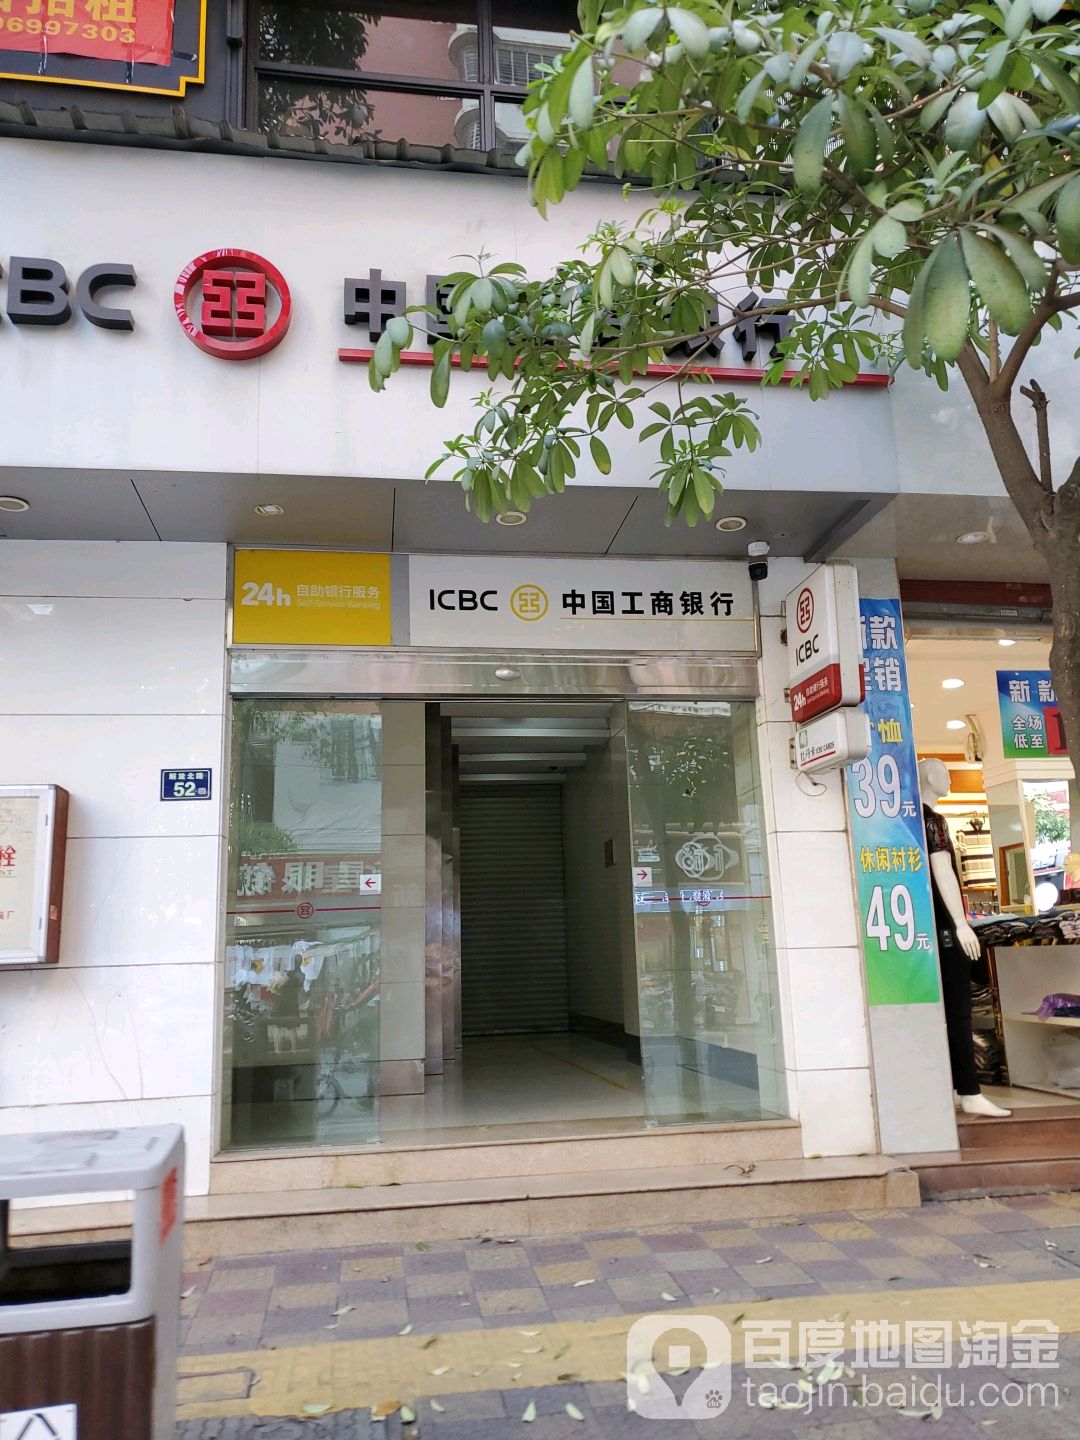 中國工商銀行24小時自助銀行(解放路)